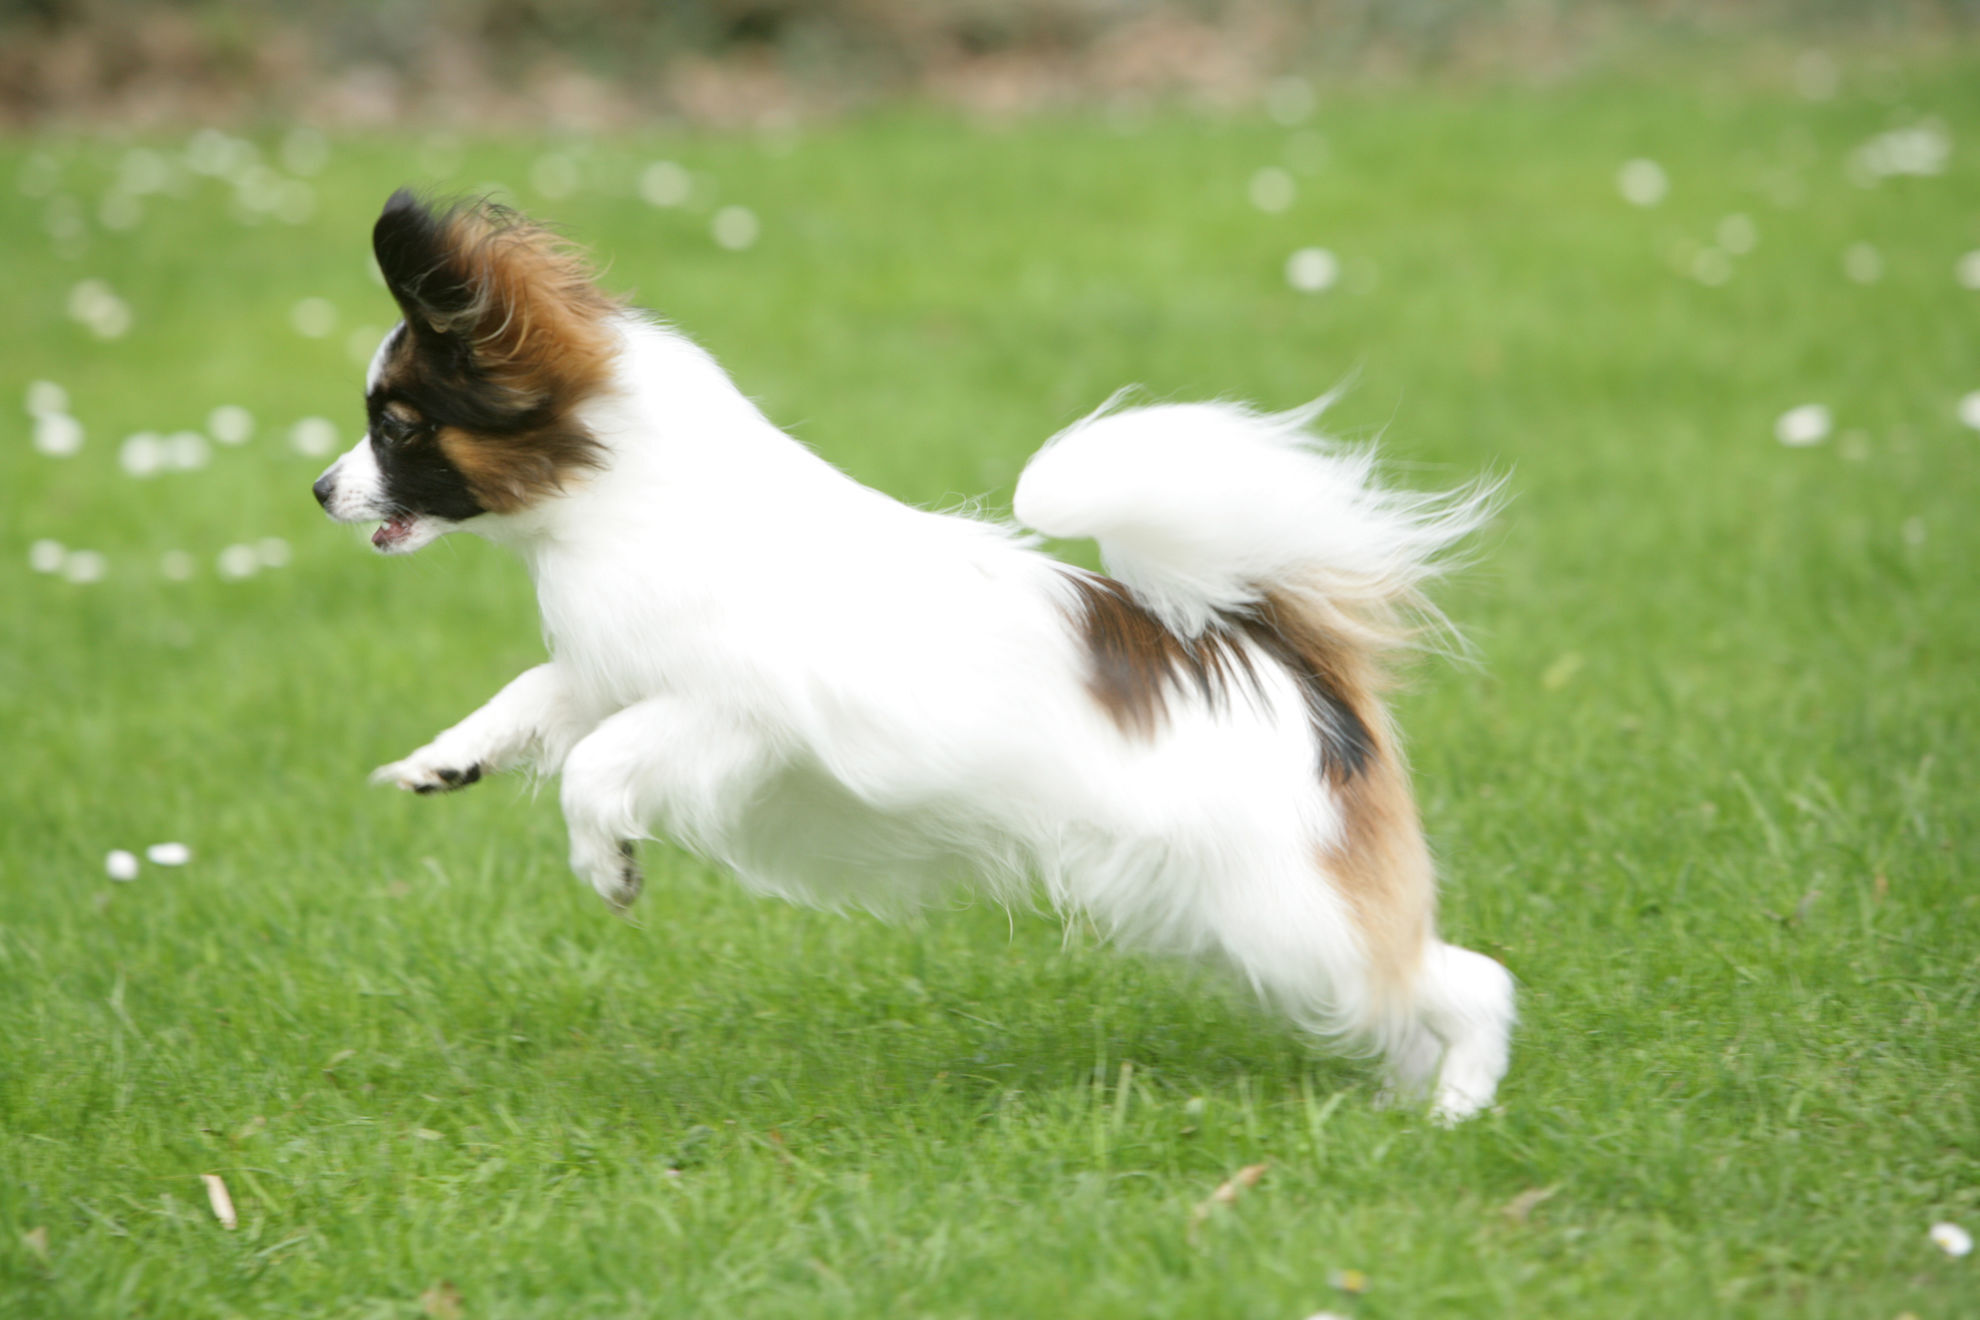 Kleiner, energetischer Papillon Hund springt über grünen Rasen